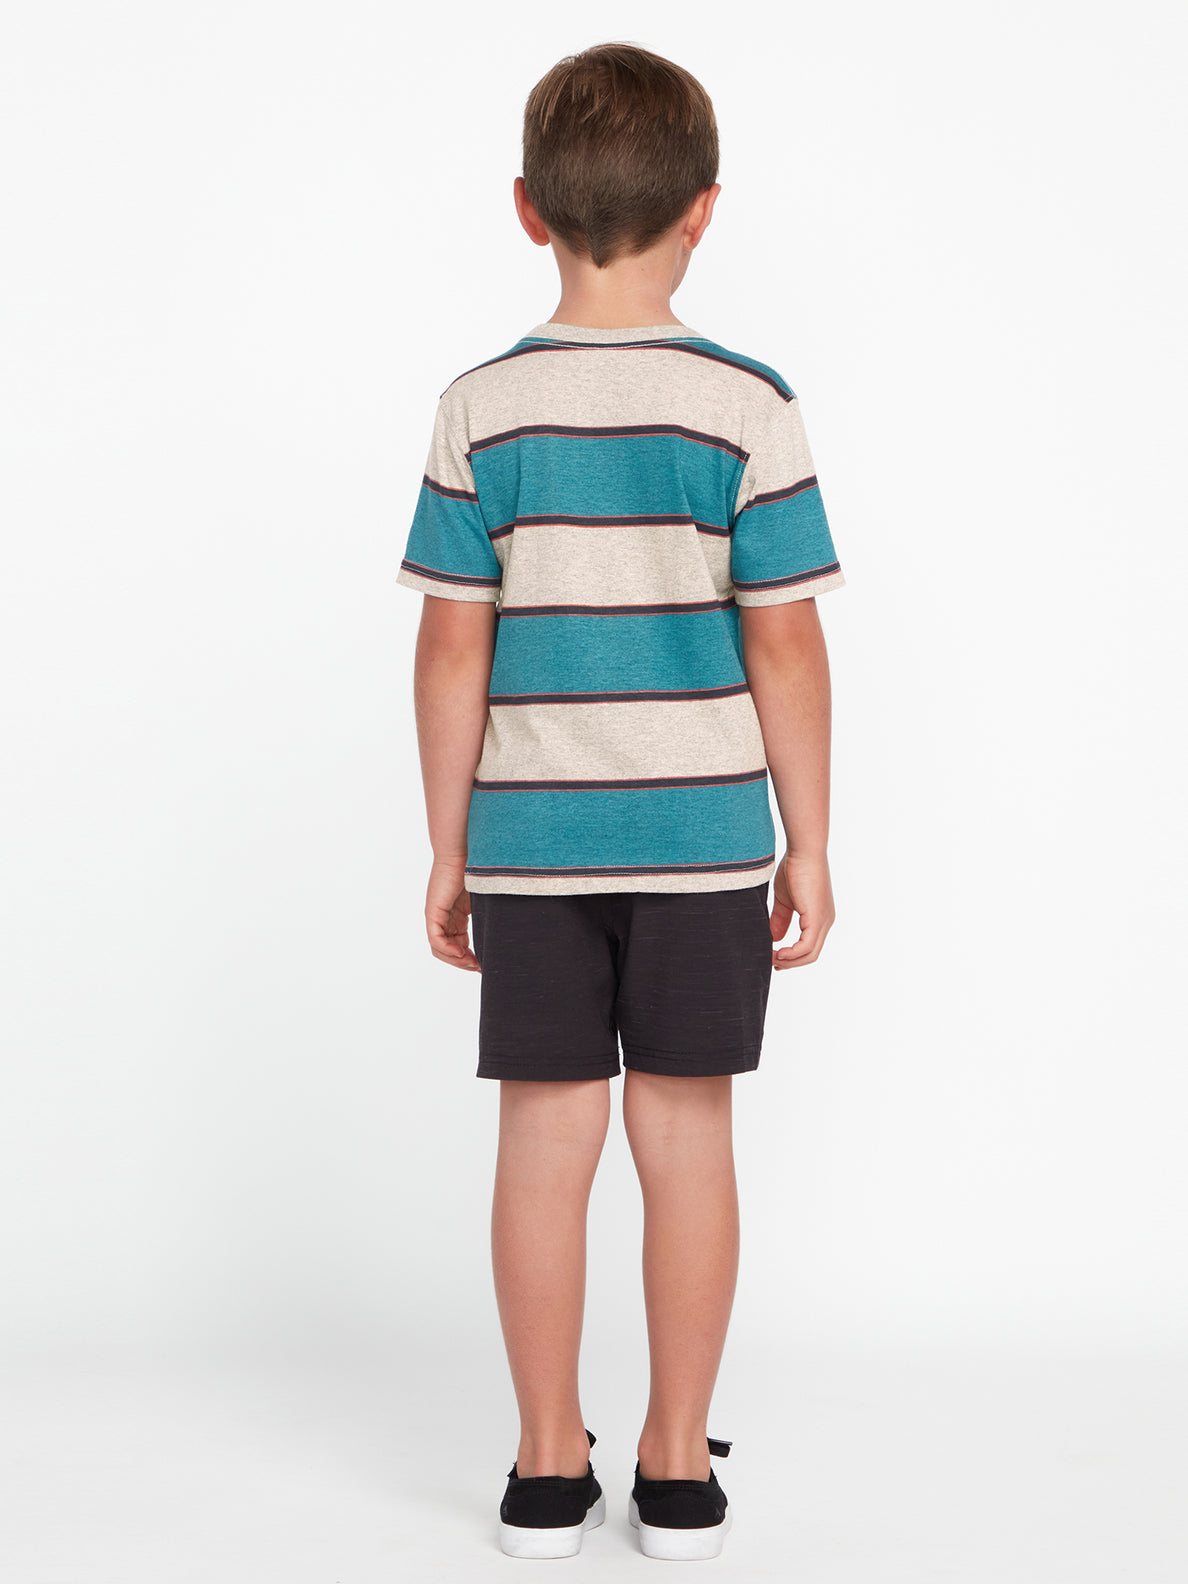 Little Boys Bandstone Crew Short Sleeve Shirt - Heather Grey (Y0112305_HGR) [16]